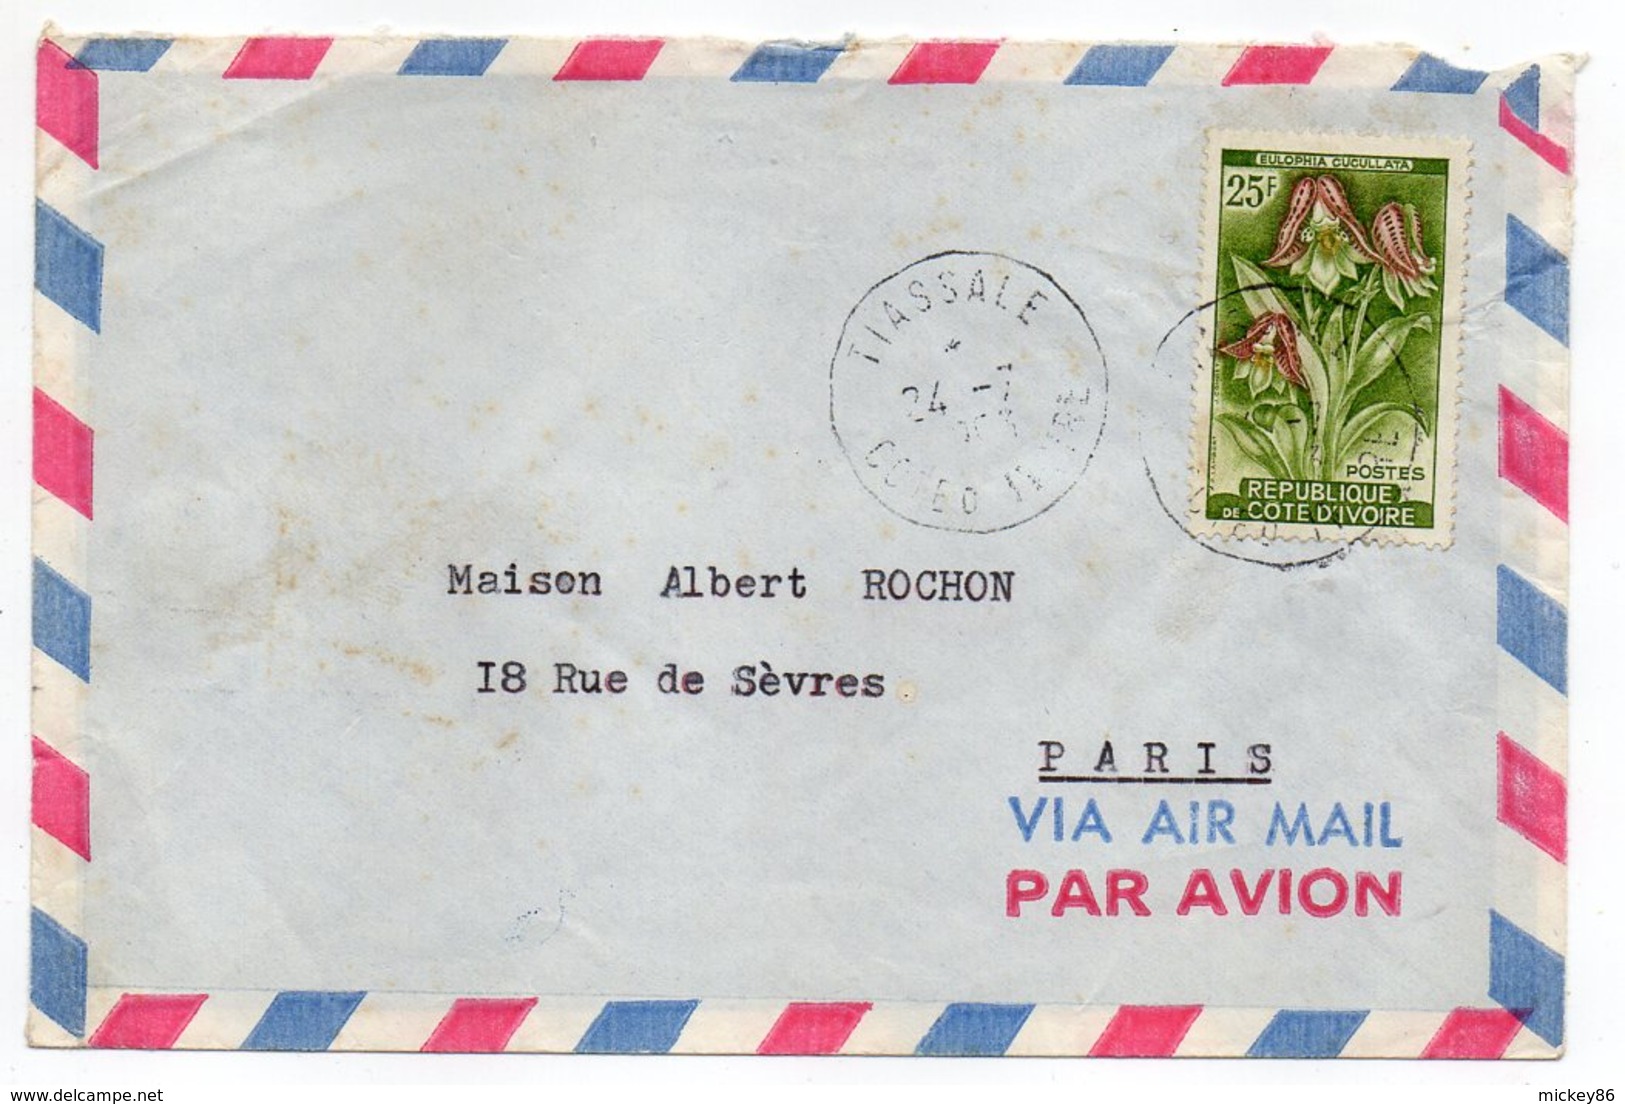 Acheter des timbres de collection & lot de timbres du monde entier - La  Maison du Collectionneur